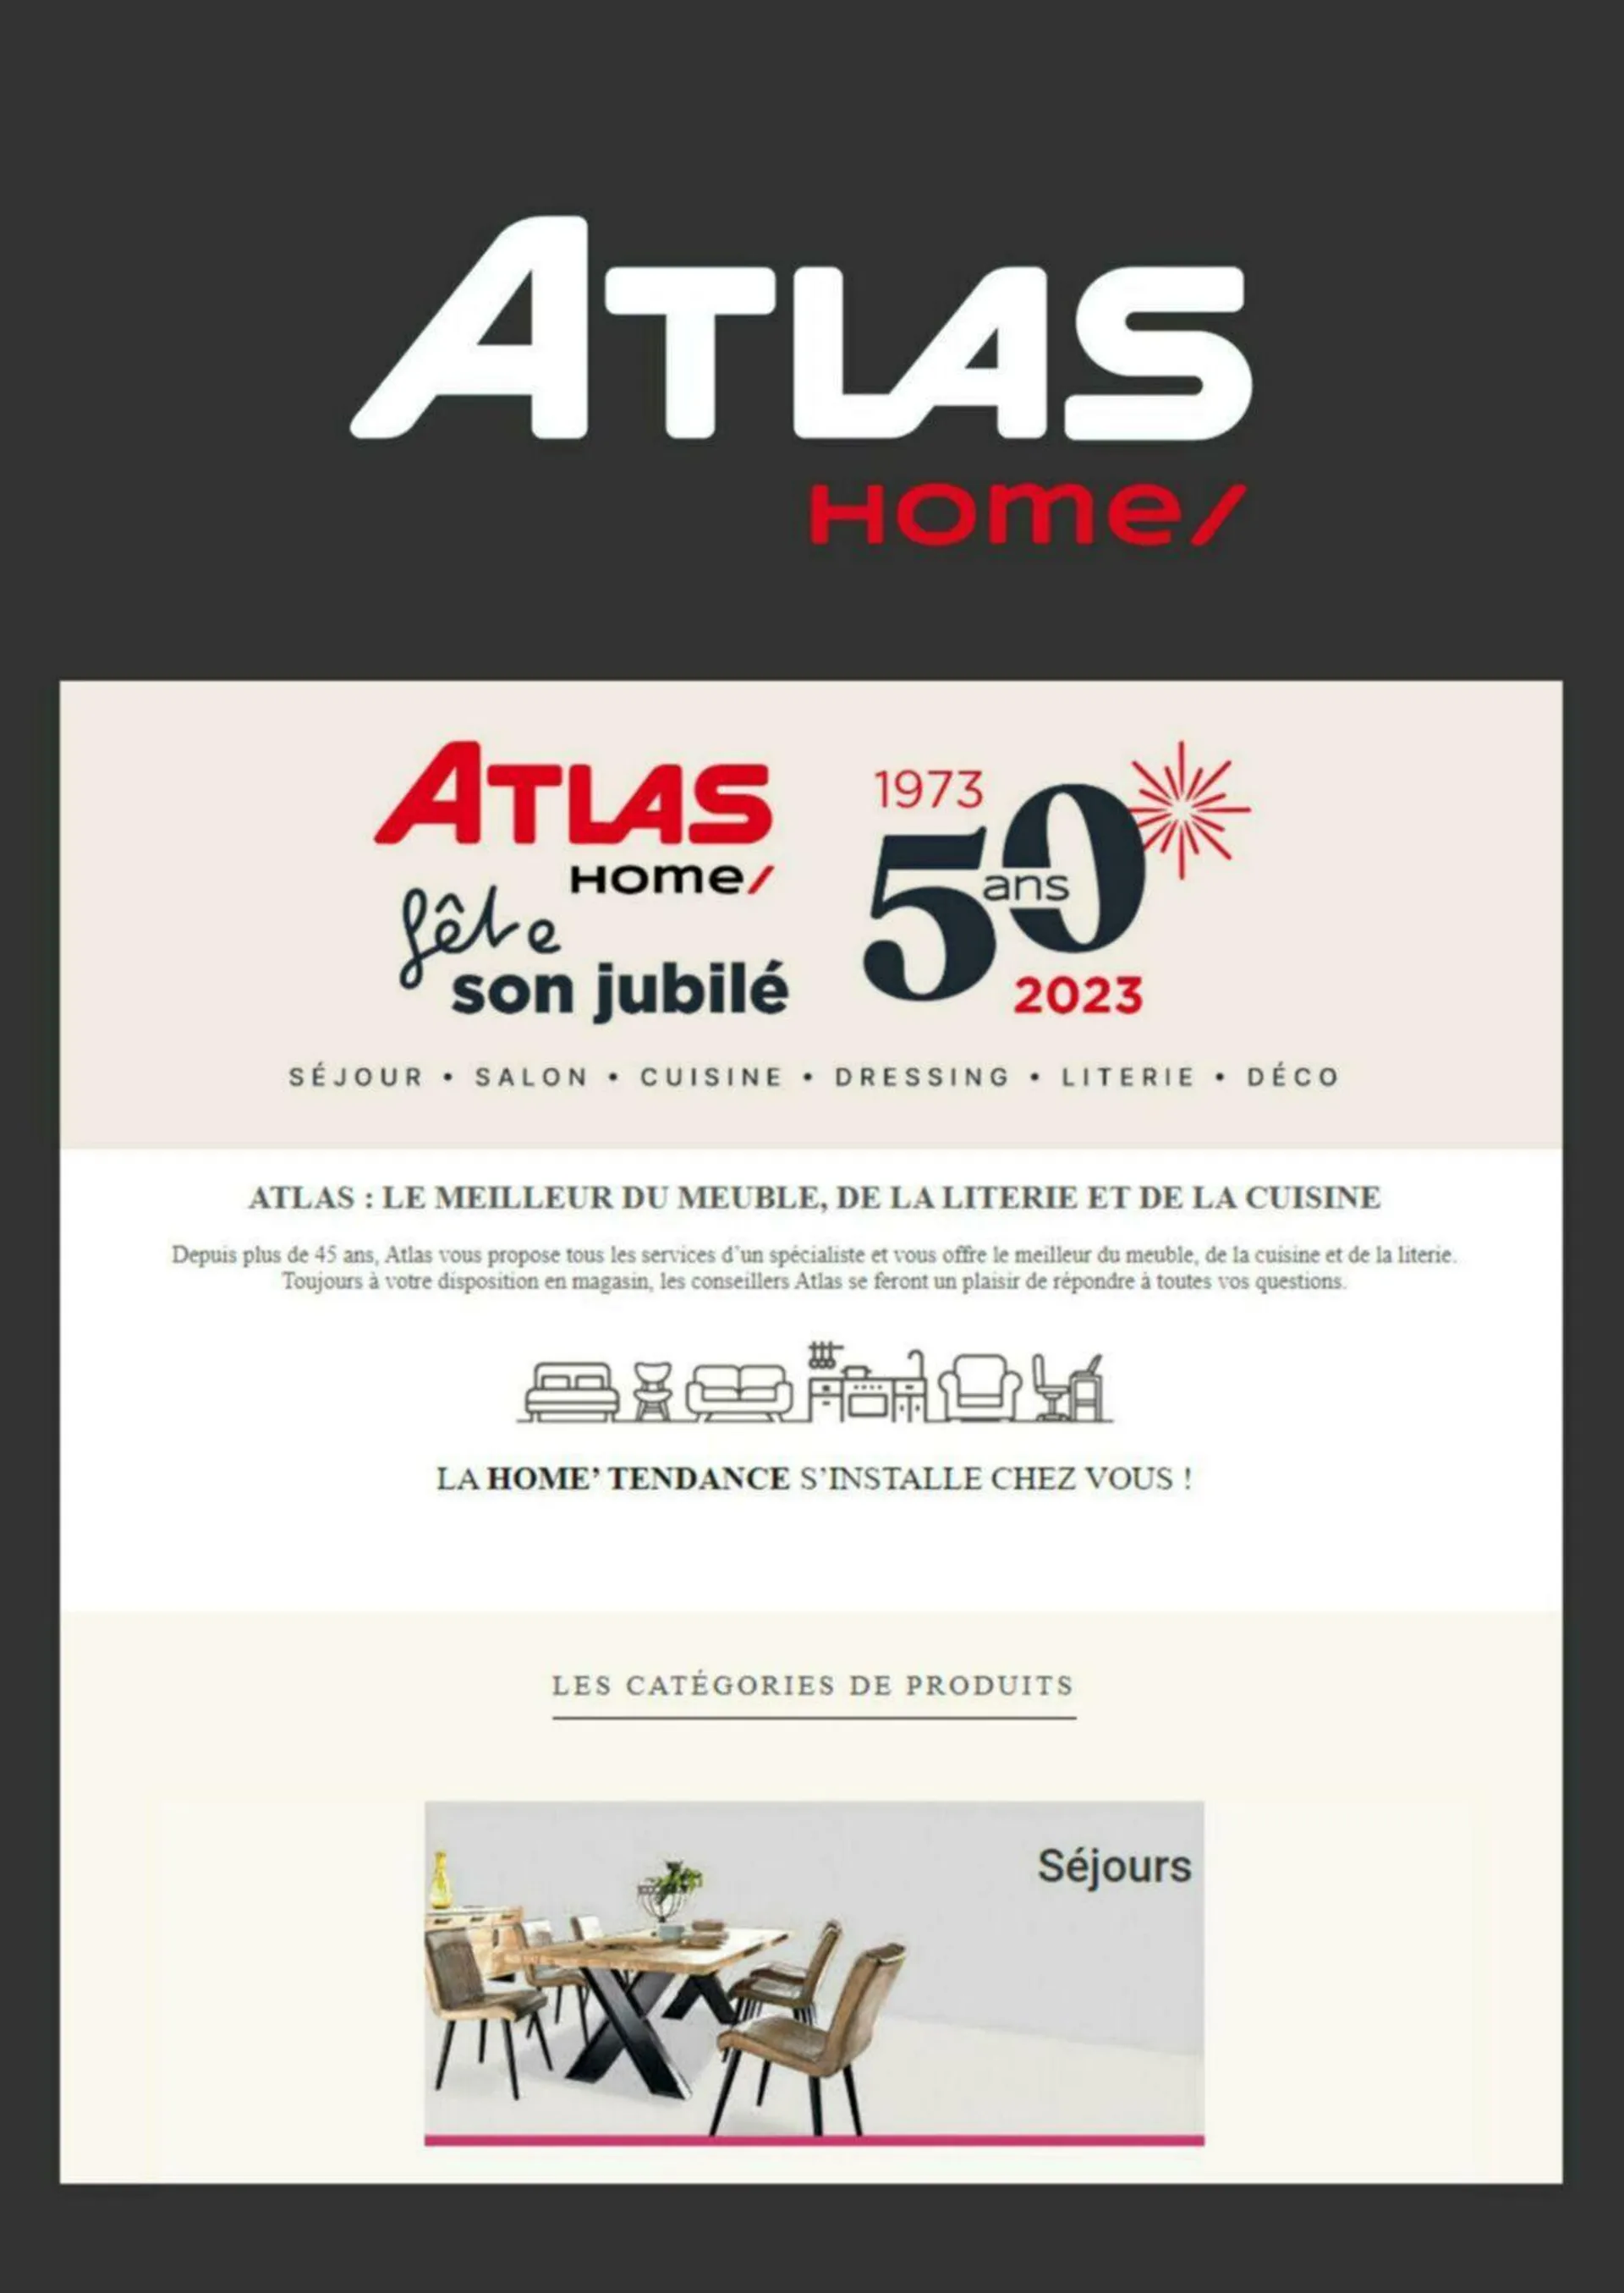 Atlas - 1